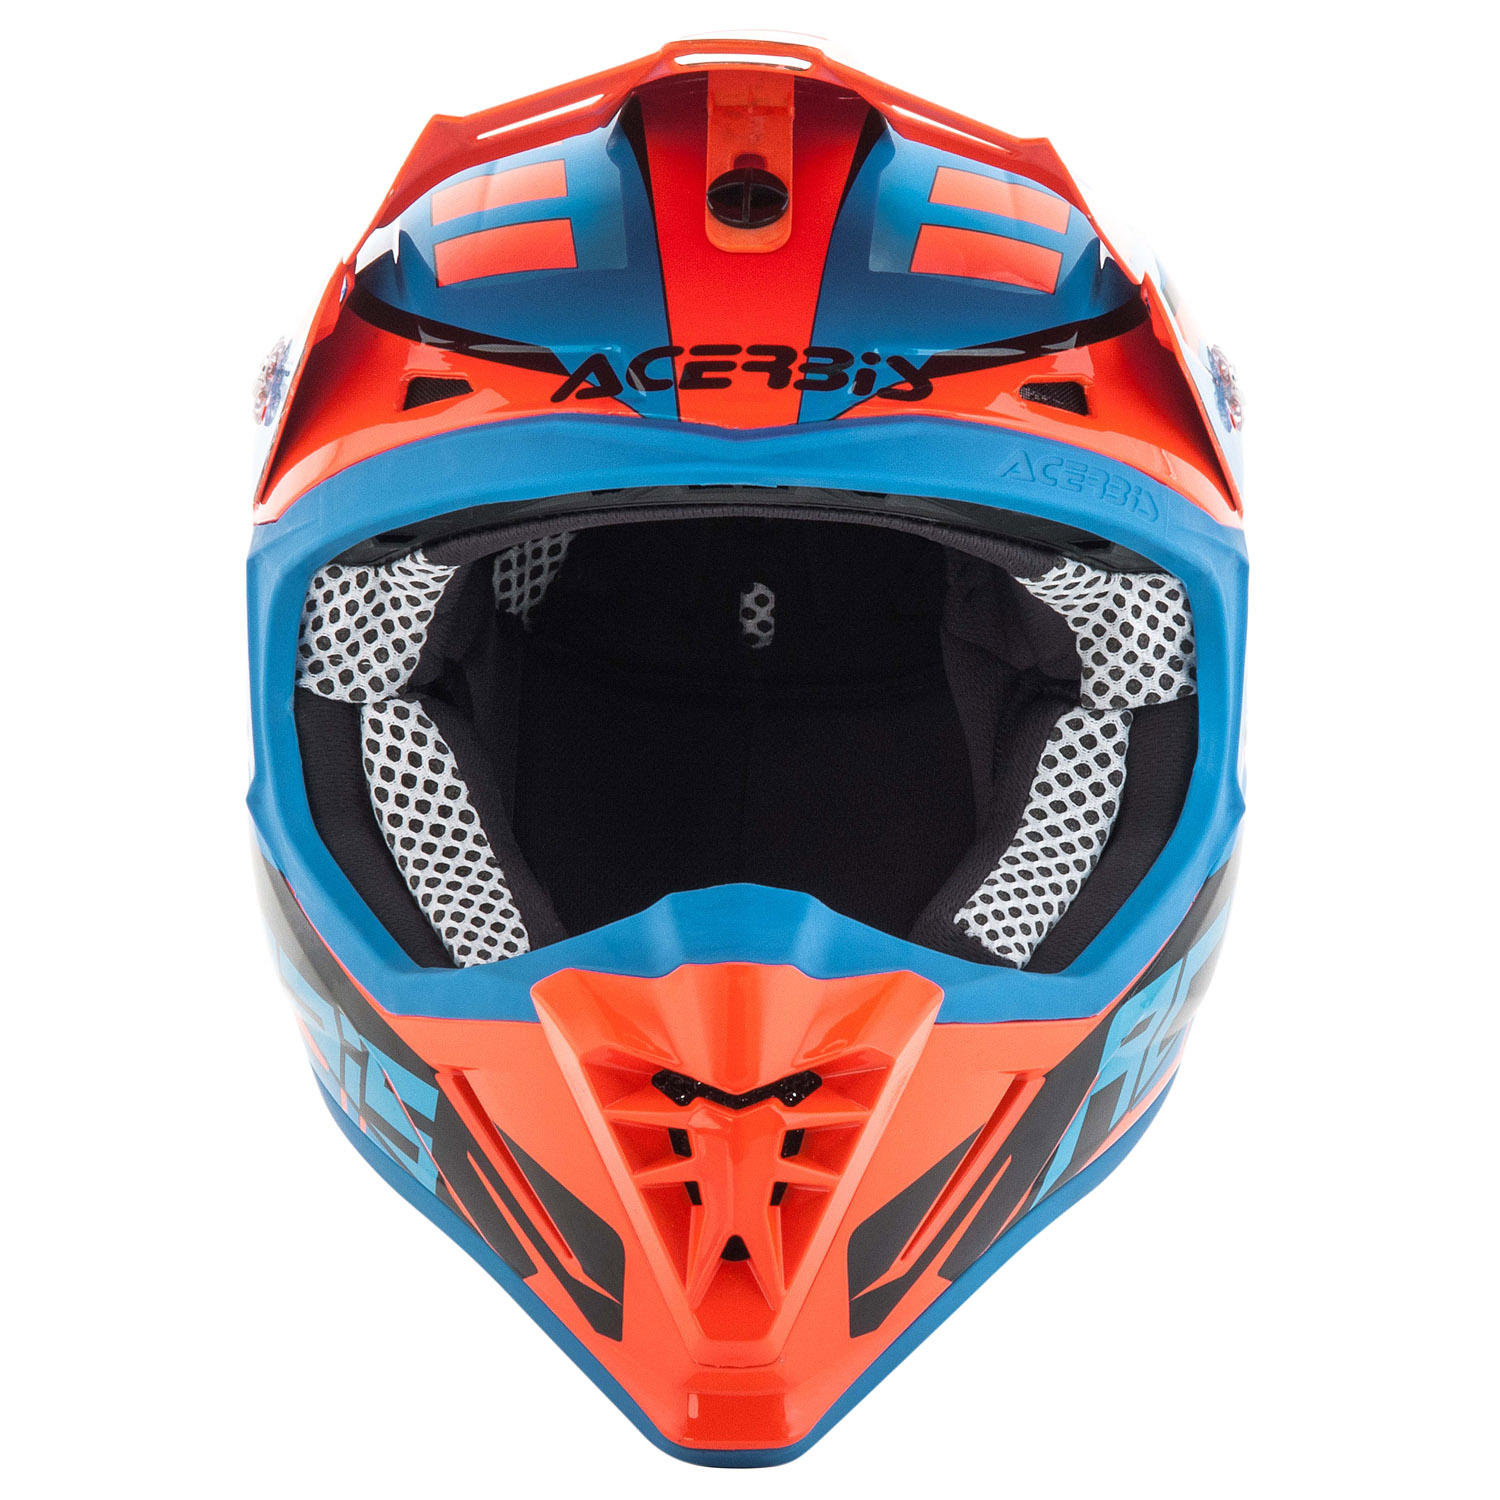 Image result for profile helmet orange blue